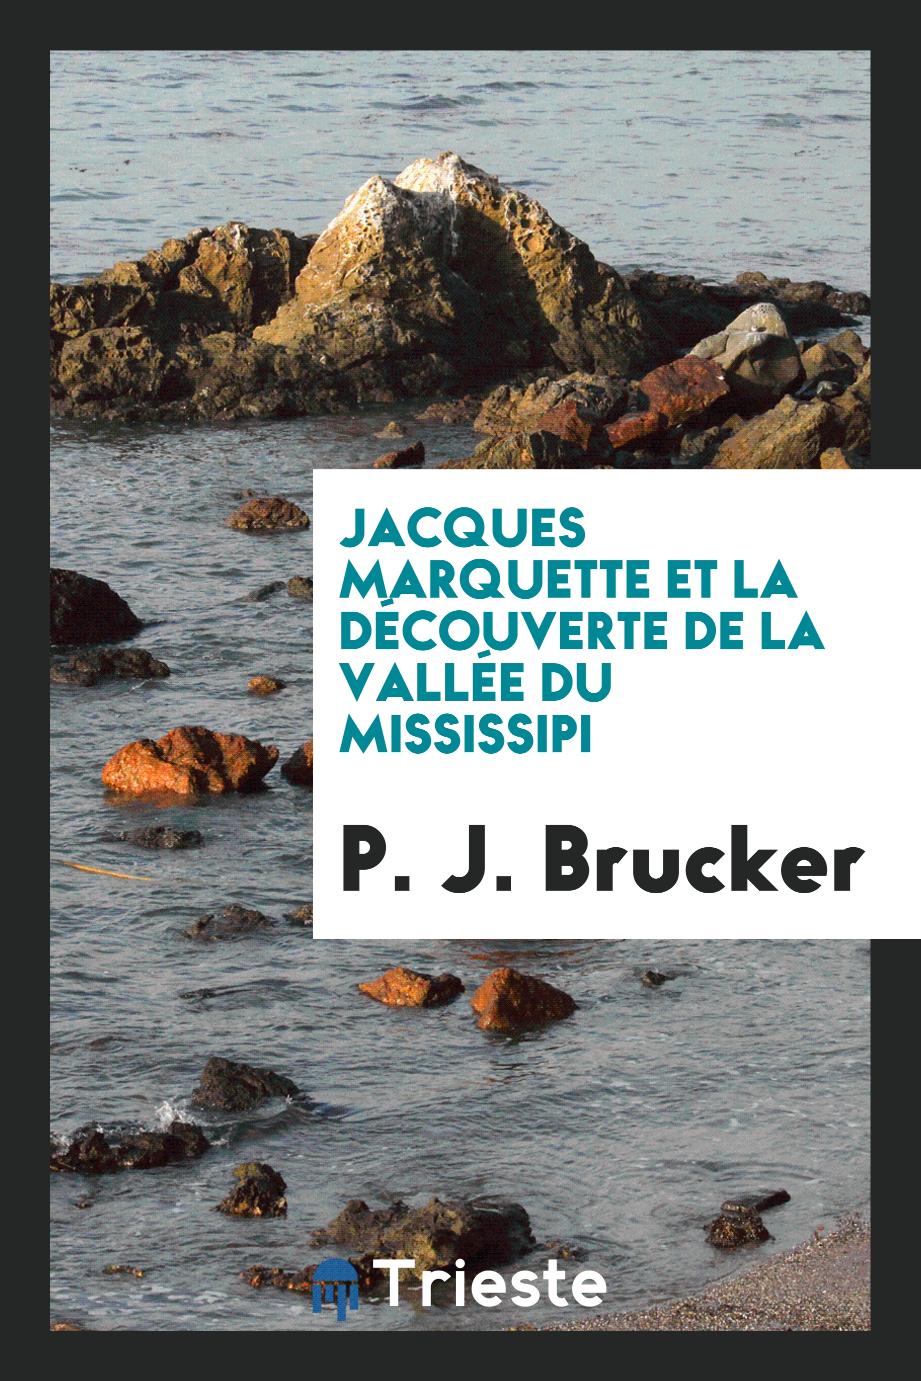 P. J. Brucker - Jacques Marquette et la Découverte de la Vallée du Mississipi